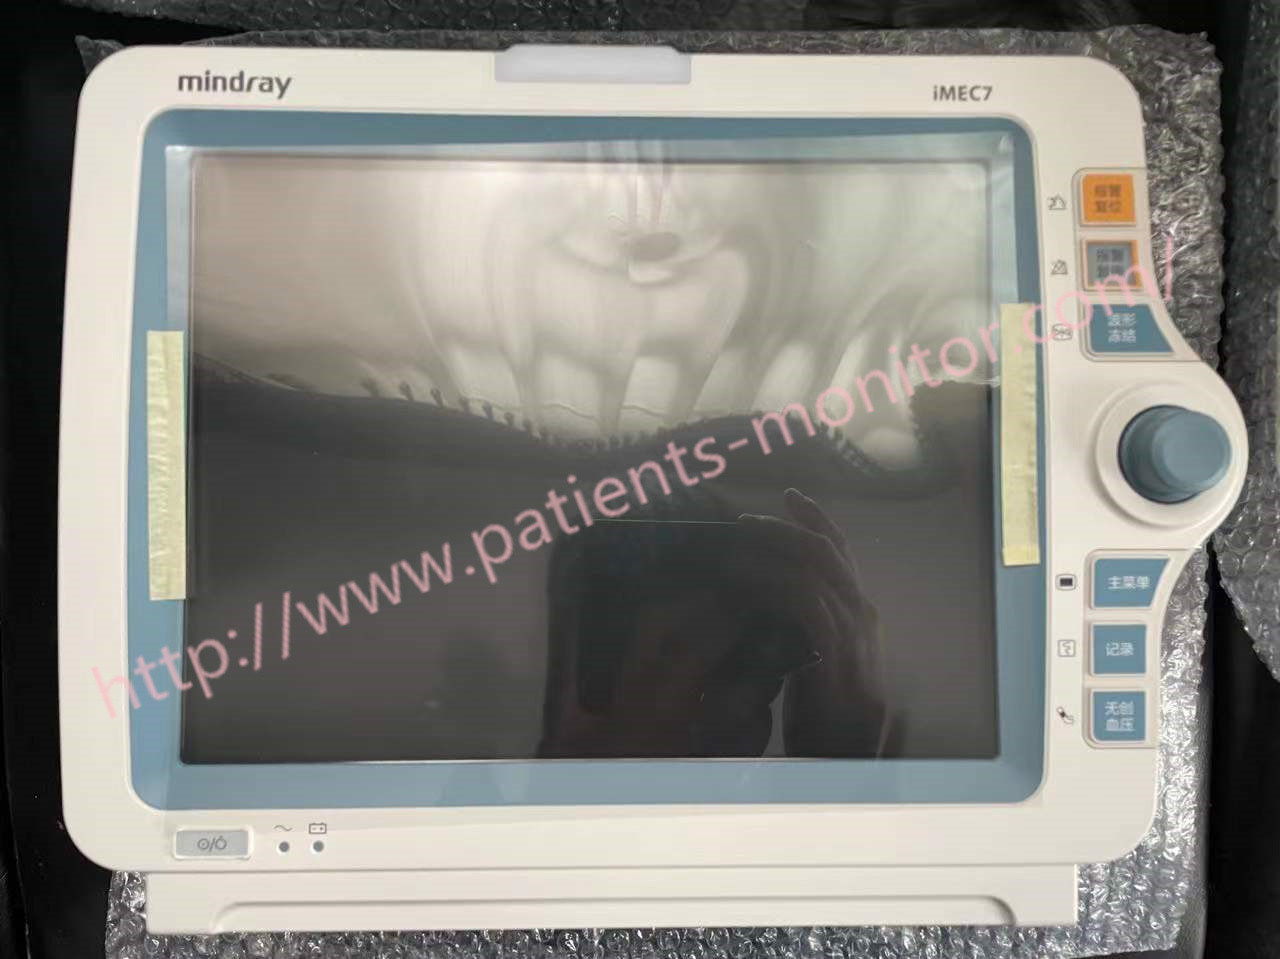 Máy theo dõi bệnh nhân Mindray IMEC7 với thông số ECG RESP NIBP SpO2 PR TEMP